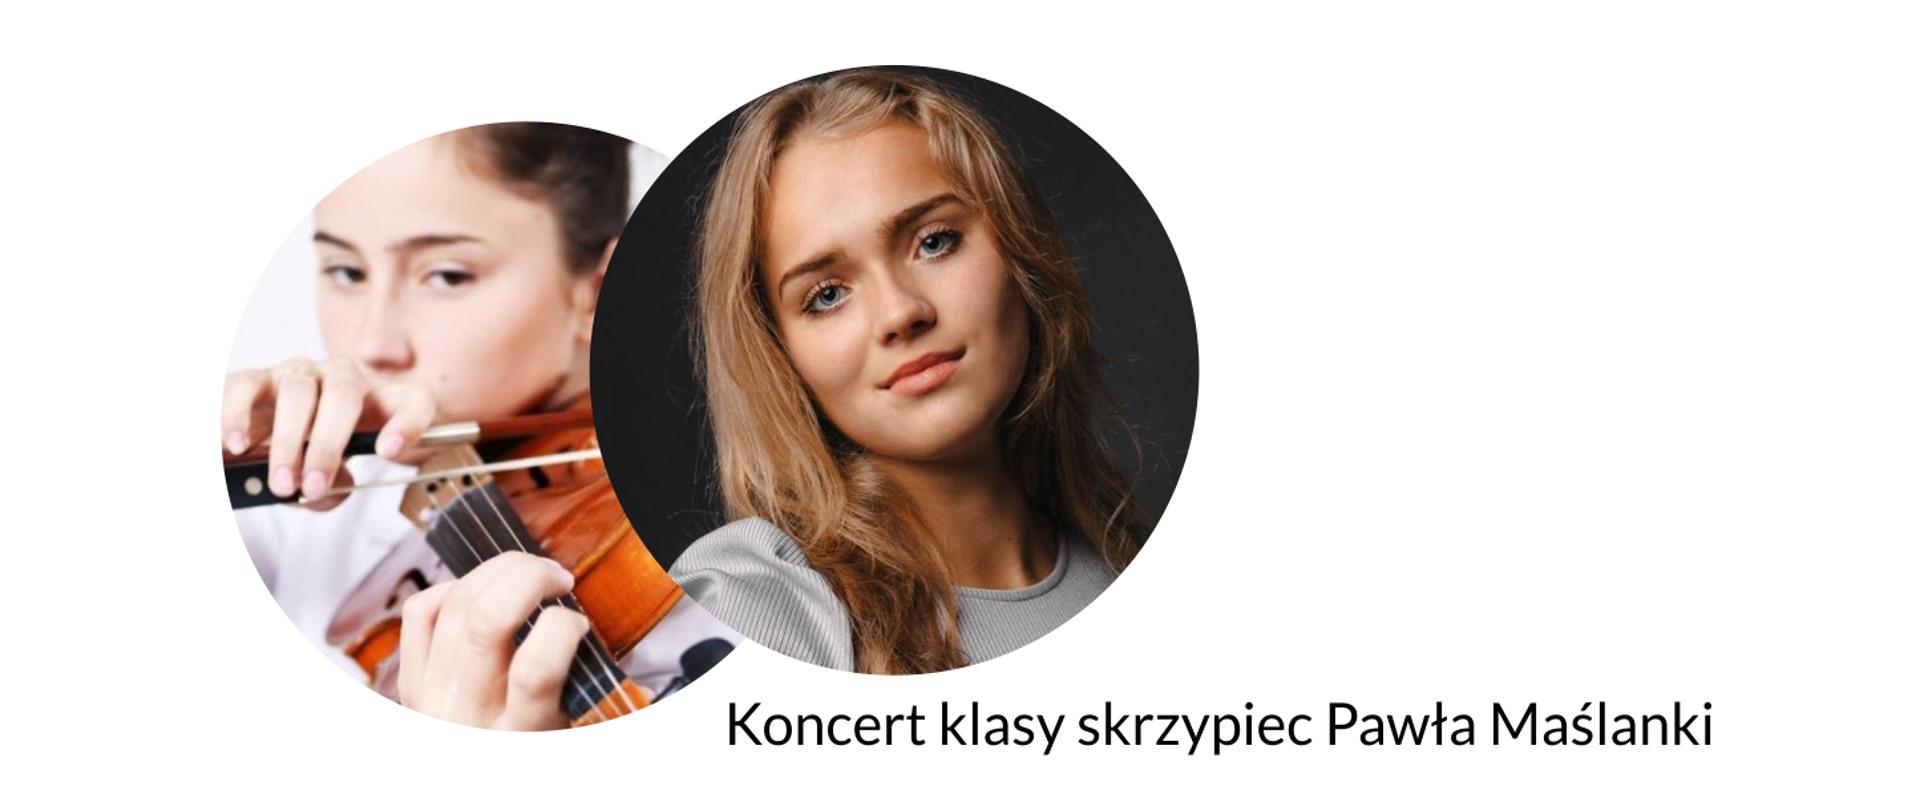 Grafika przedstawia portrety uczennic klasy skrzypiec oraz prezentuje napis: koncert klasy skrzypiec Pawła Maślanki